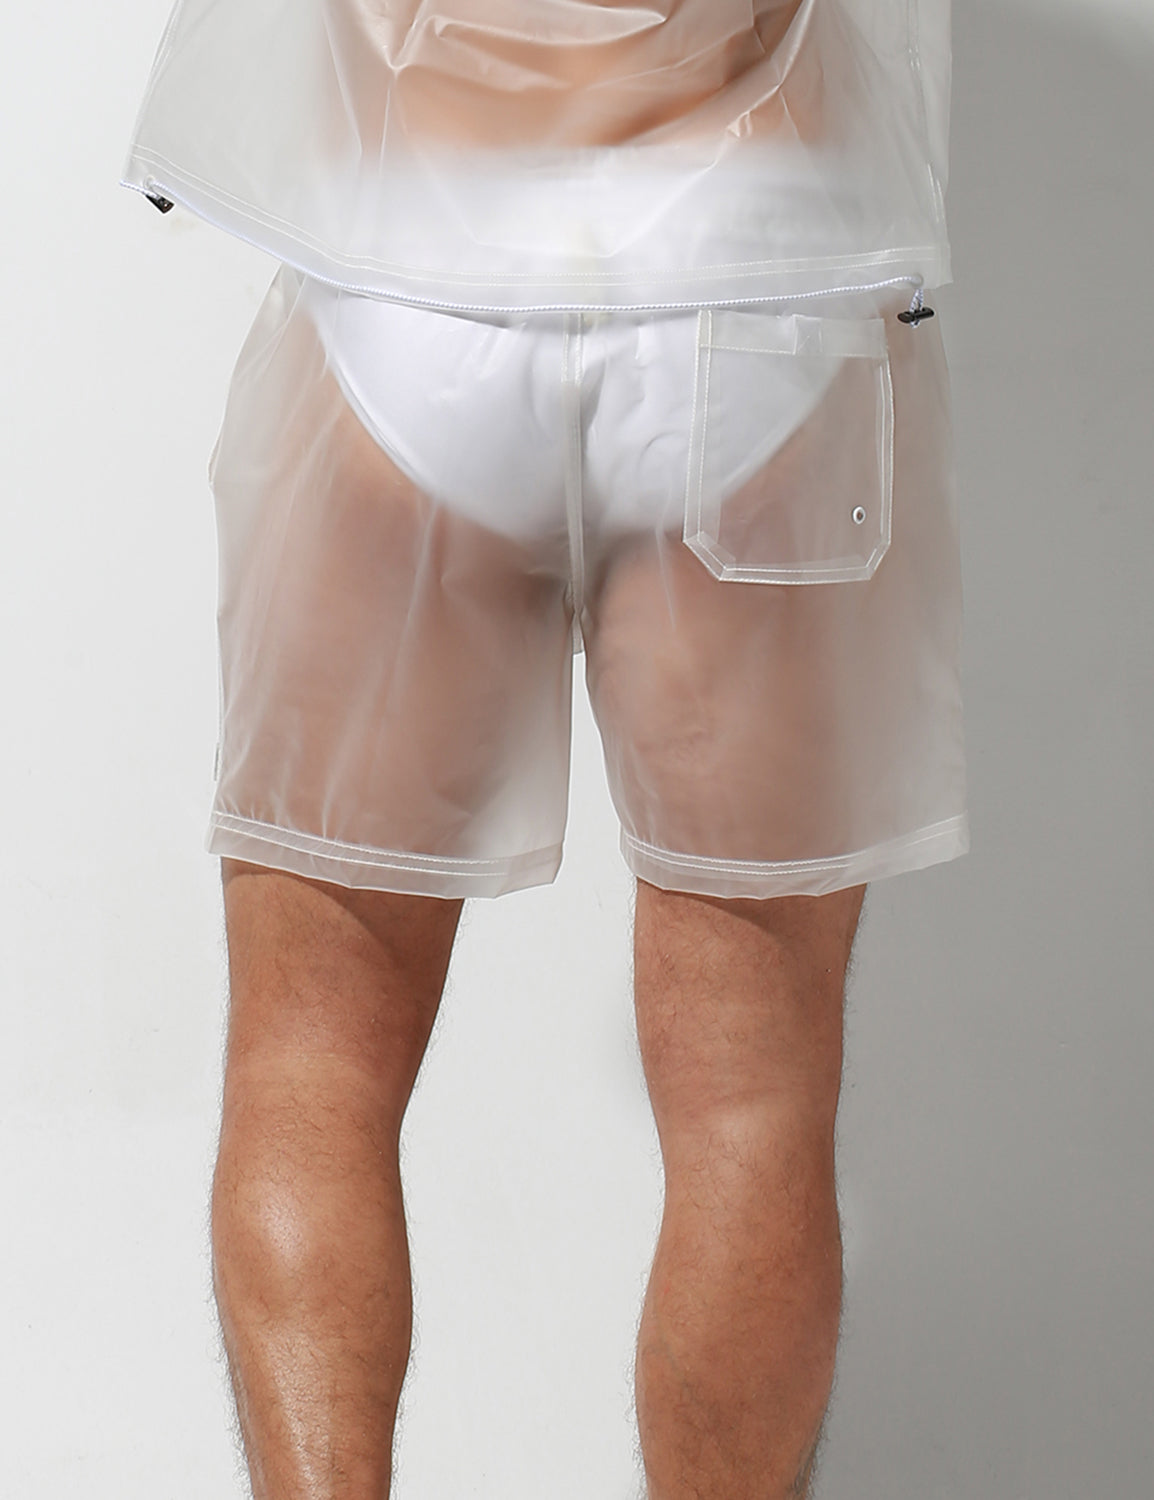 Translucent Windbreaker Hooded Jacket / Shorts